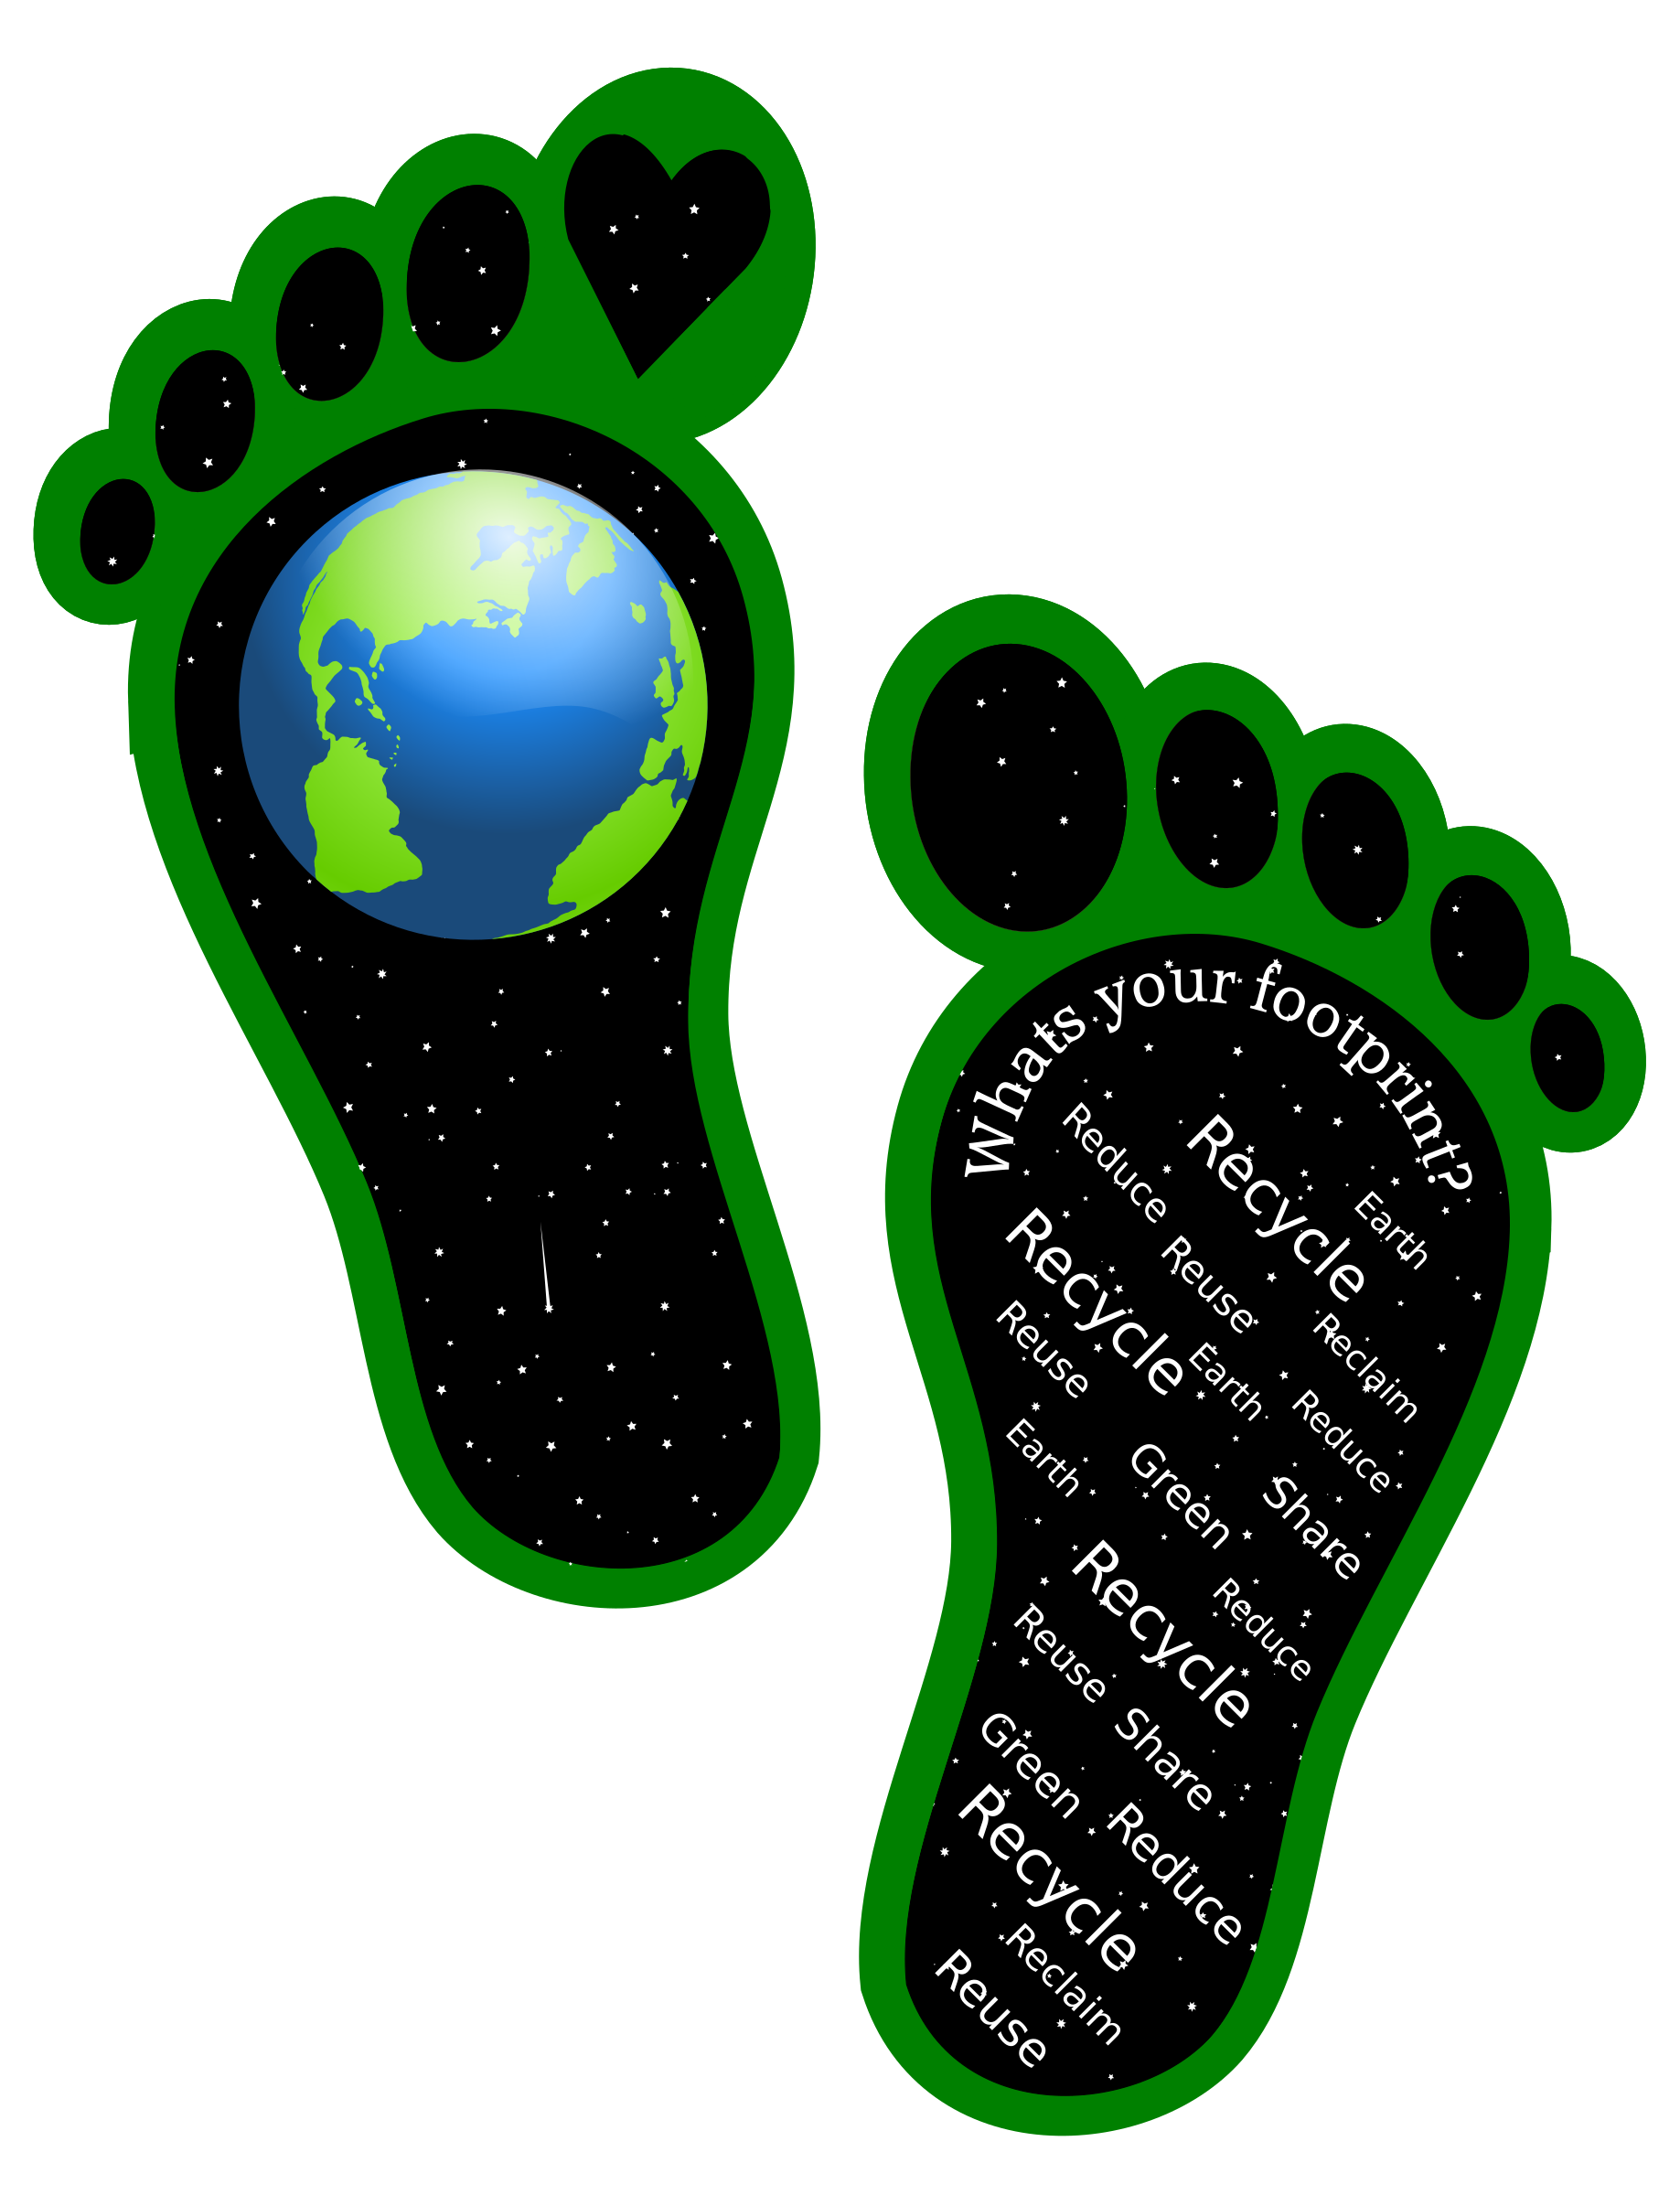 footprints clipart green footprint